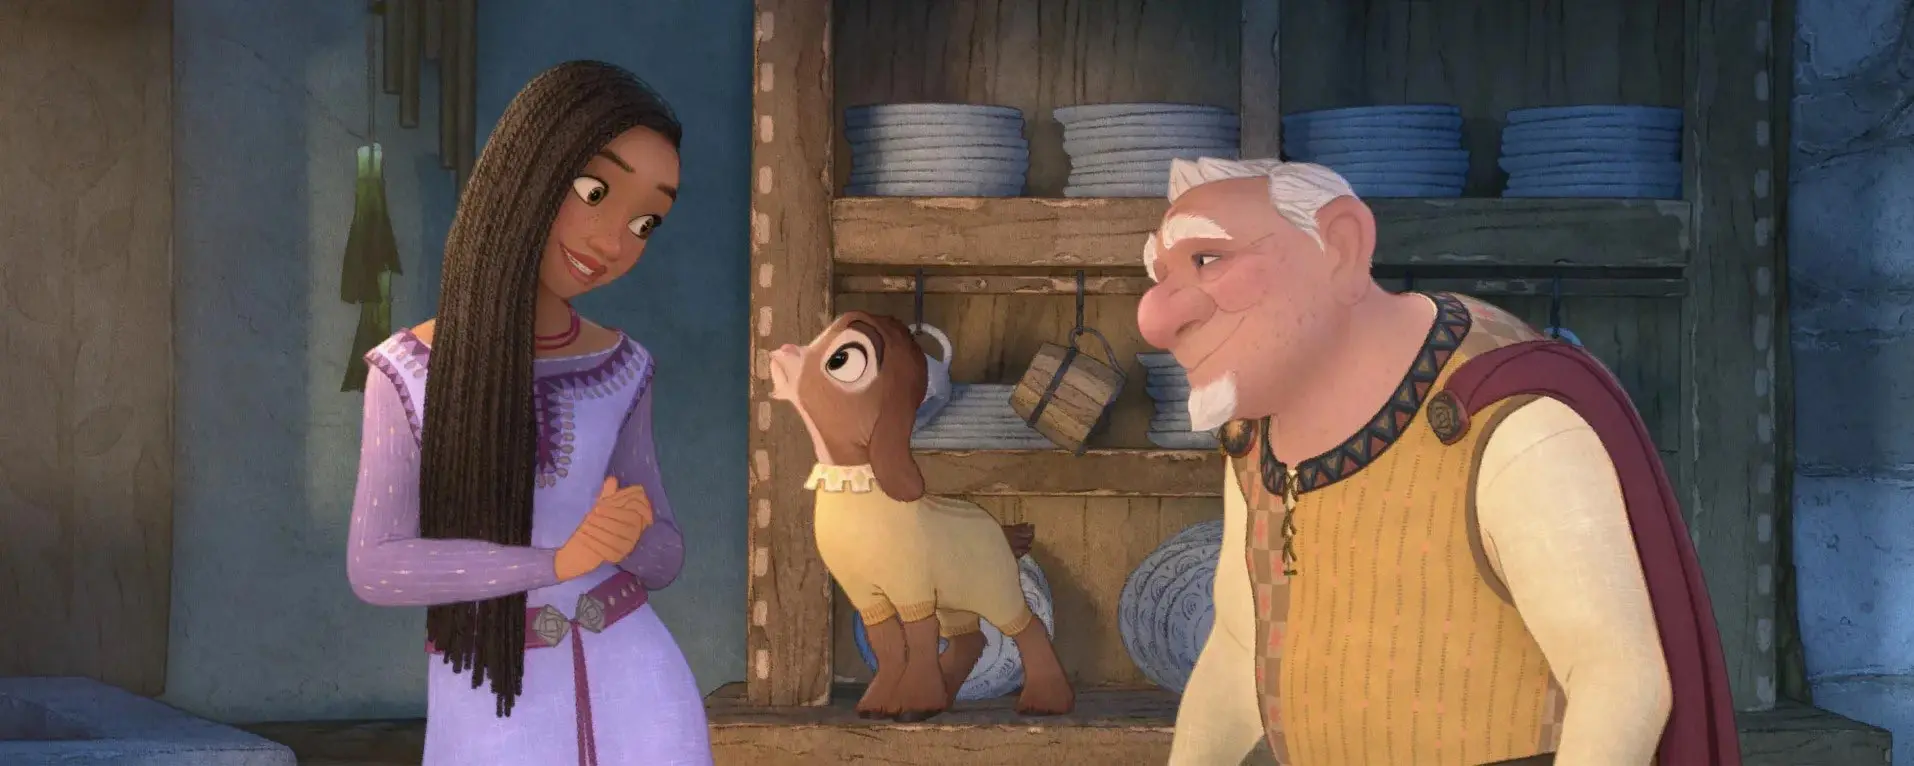 دختری با موهای بلند در کنار بزی بامزه و یک پیرمرد در انیمیشن آرزو اثر دیزنی